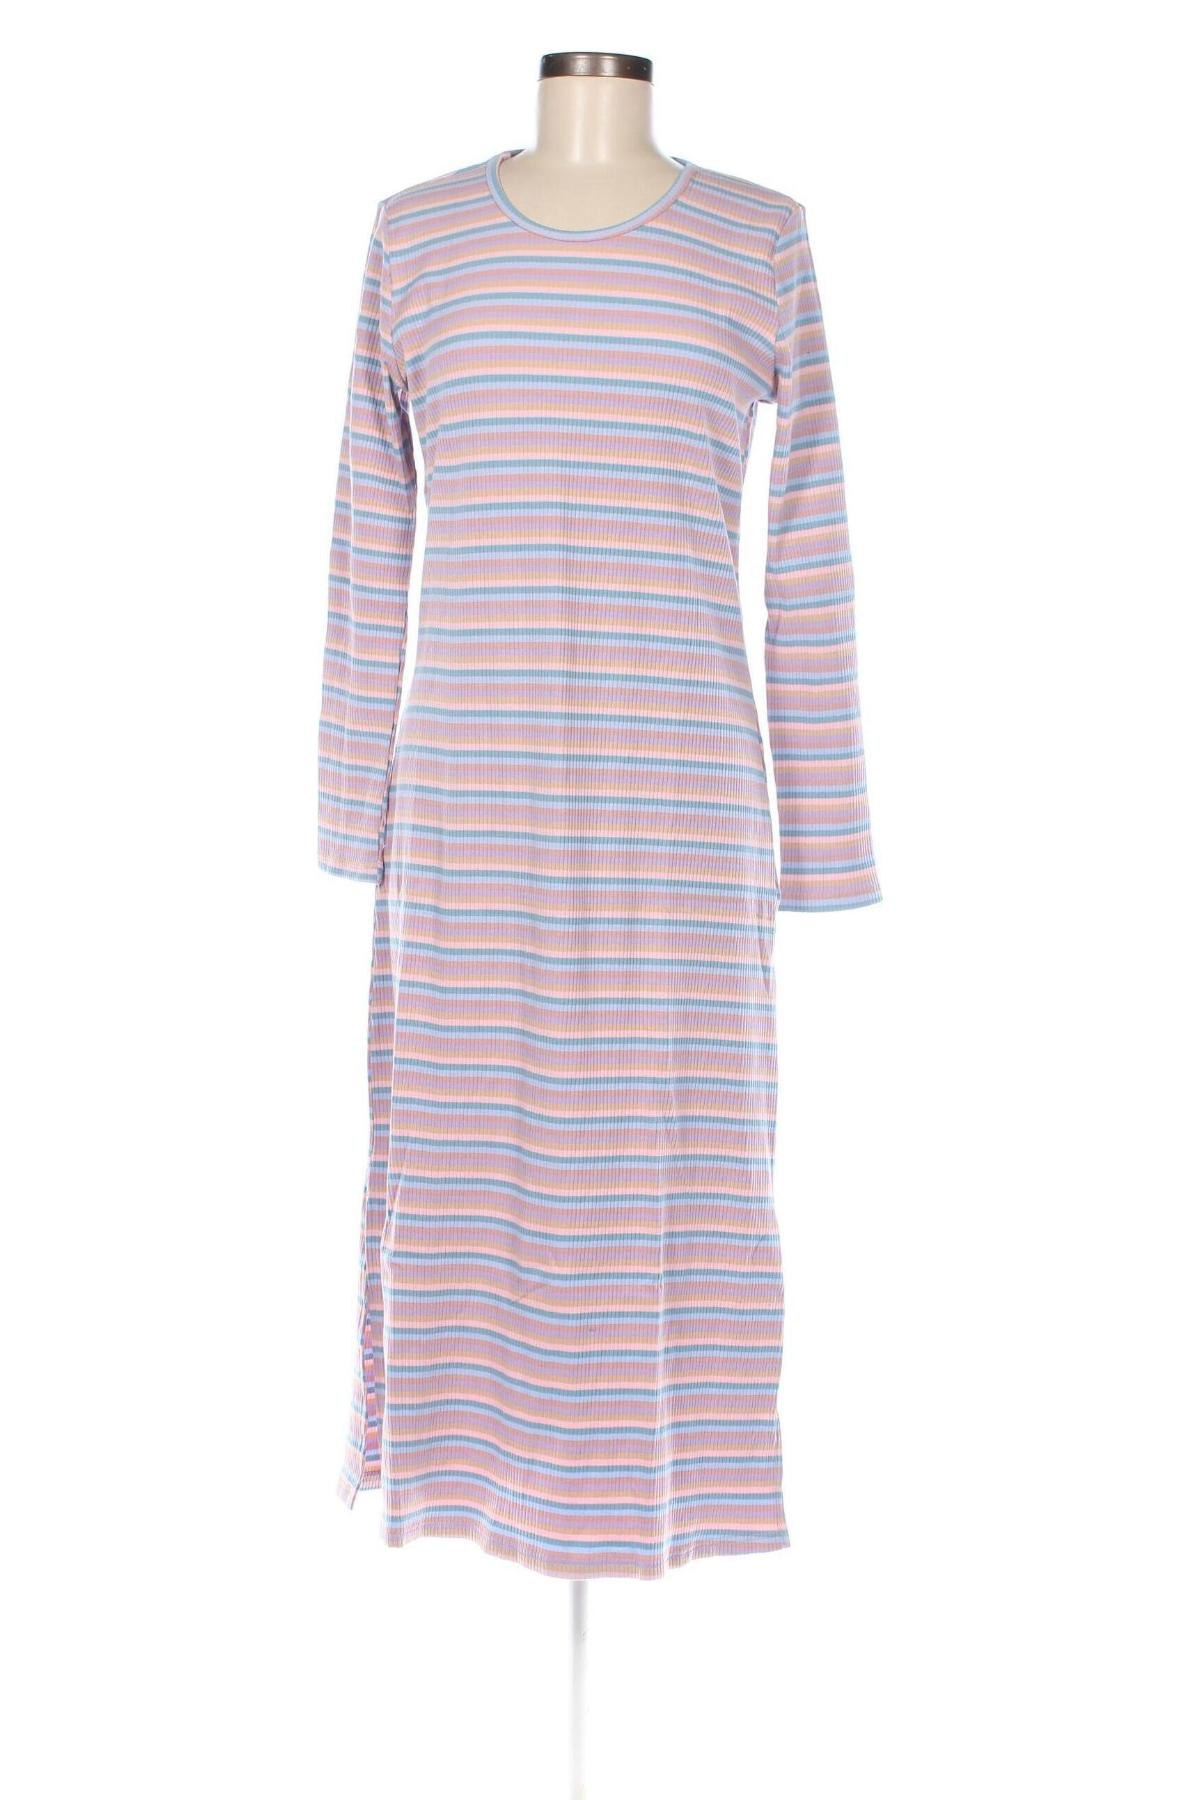 Φόρεμα Ichi, Μέγεθος M, Χρώμα Πολύχρωμο, Τιμή 30,50 €